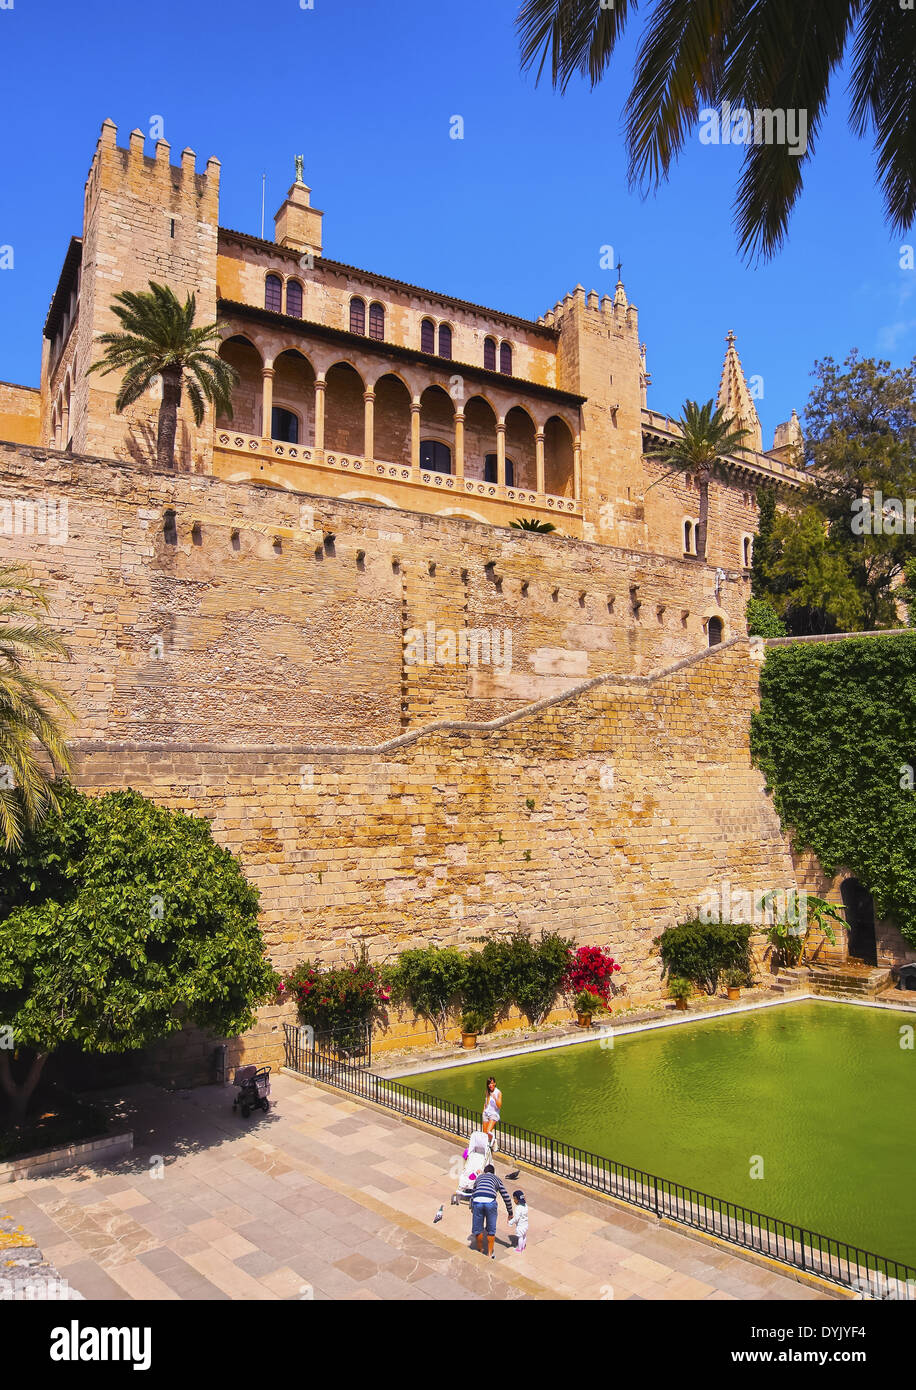 Le palais de la Almudaina - palace à Palma de Majorque, Îles Baléares, Espagne Banque D'Images